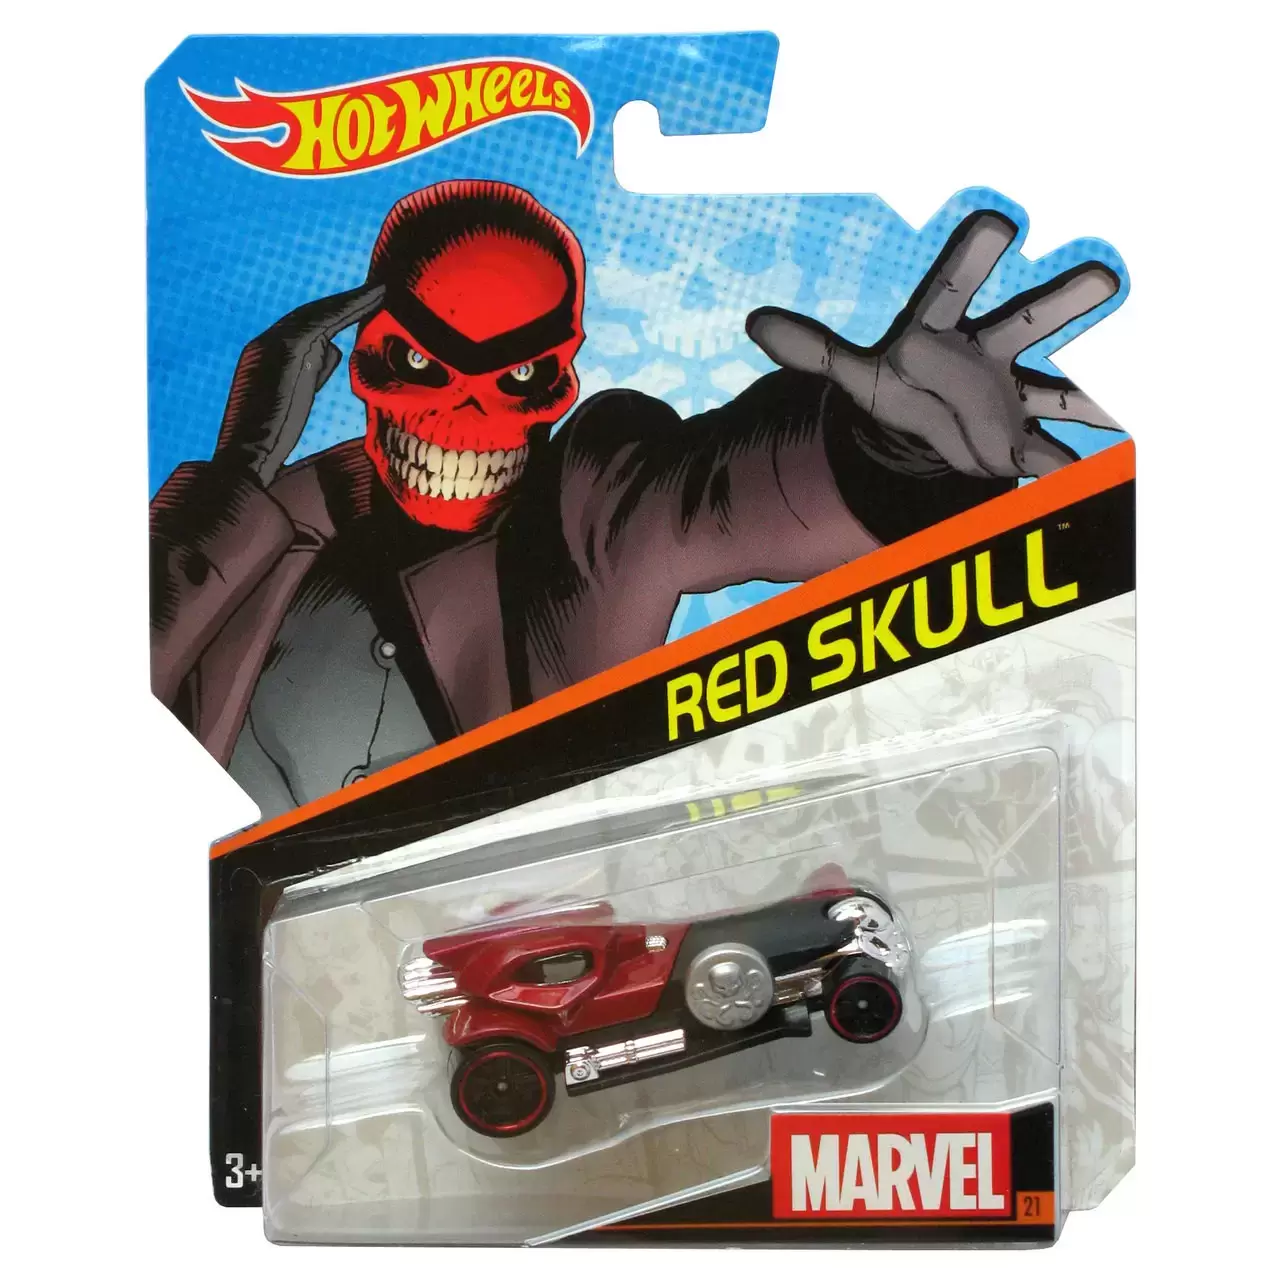 Marvel Character Cars - Red Skull